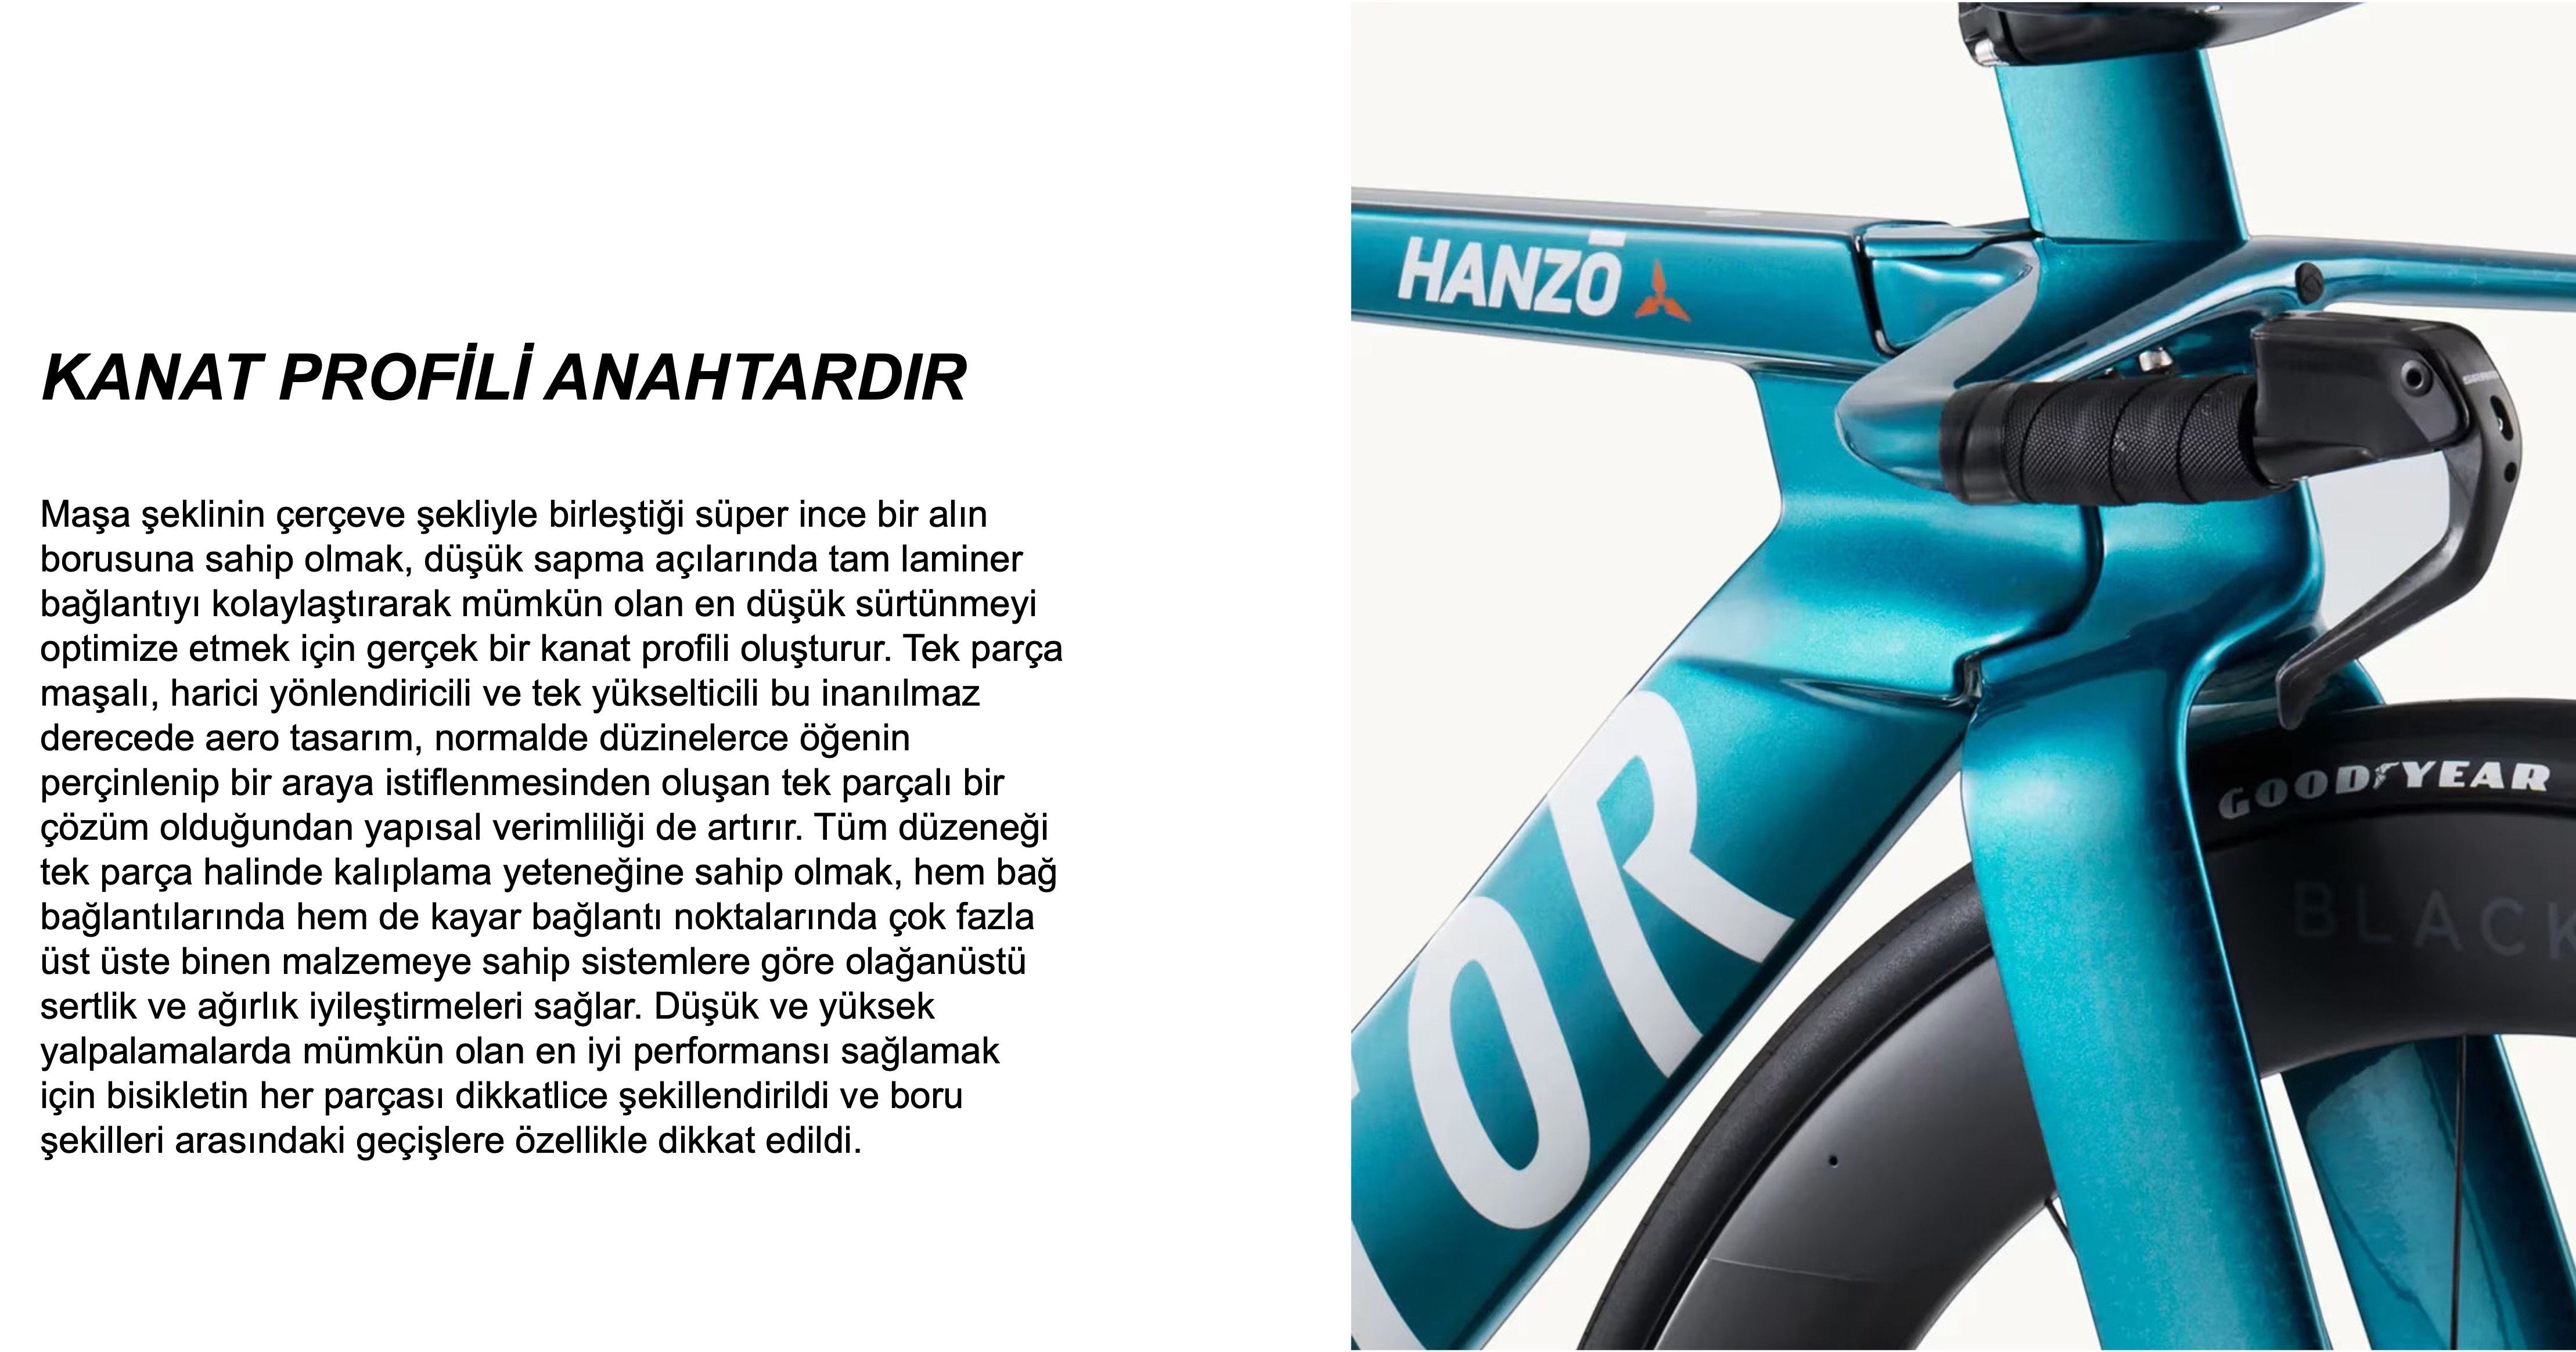 Factor HANZO TT Detaylarını gösteren fotoğraf.